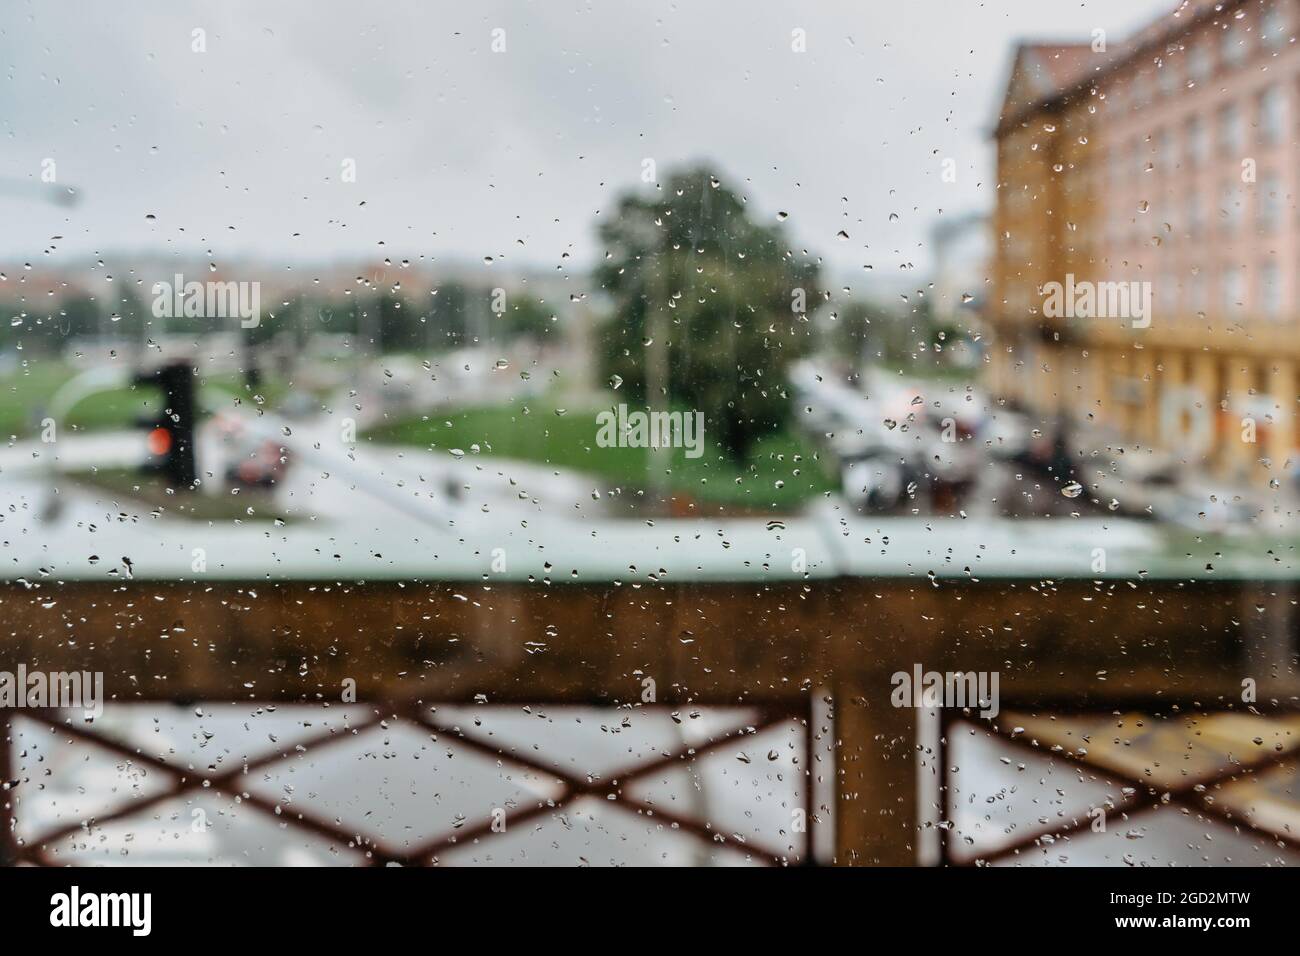 Gouttes de pluie pendant la pluie par jour de pluie.Voir la fenêtre extérieure, le verre avec un arrière-plan flou.goutte d'eau qui coule à la surface.verre humide, mauvais temps Banque D'Images